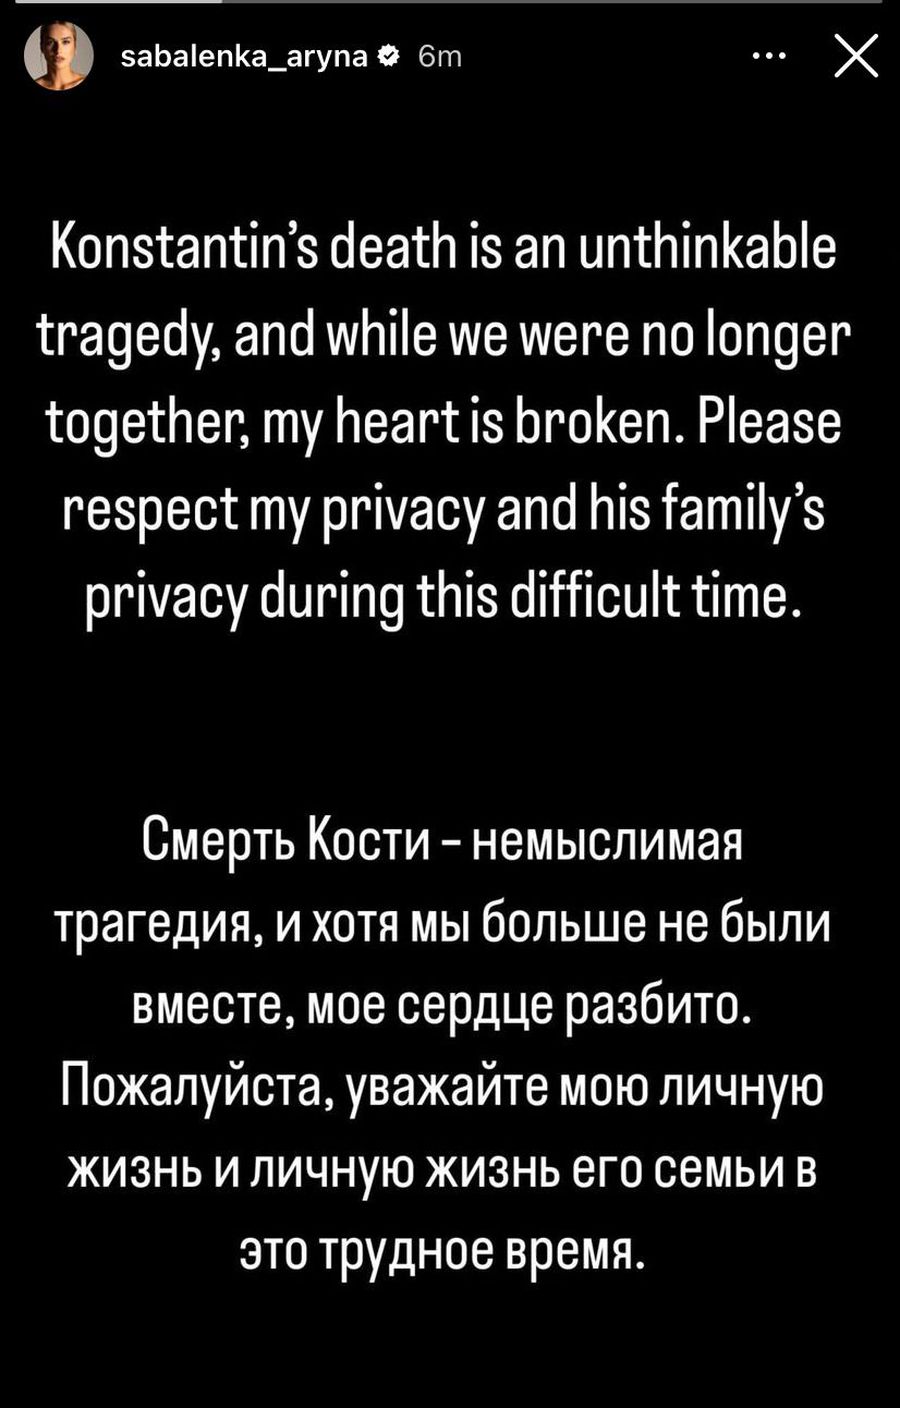 Aryna Sabalenka, prima reacție după moartea lui Koltsov: „Deși nu mai eram împreună, am inima frântă”